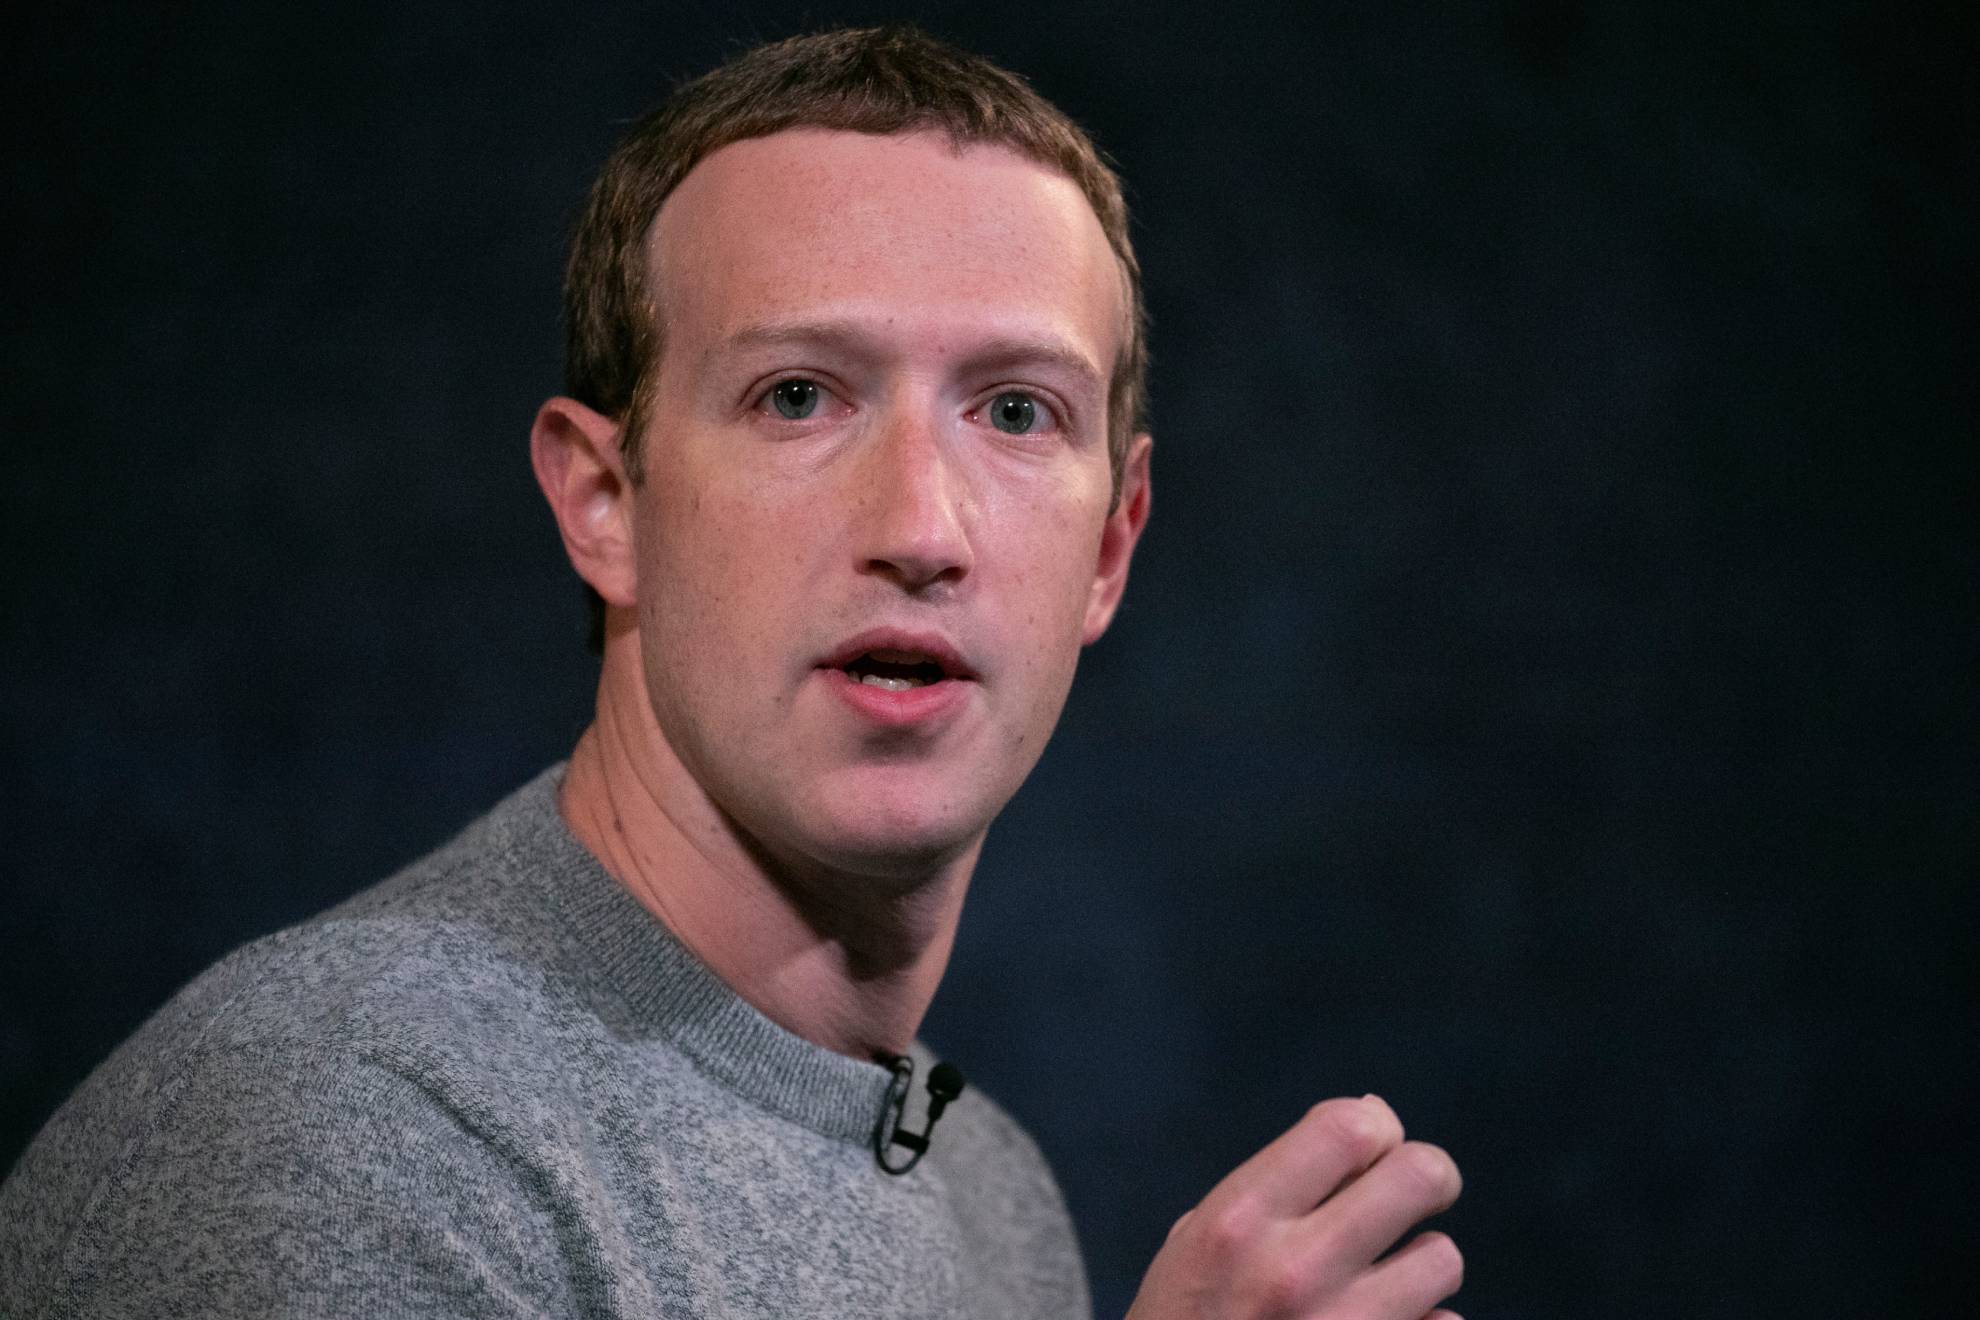 Este fue el segundo despido masivo de Zuckerberg en los últimos 5 meses